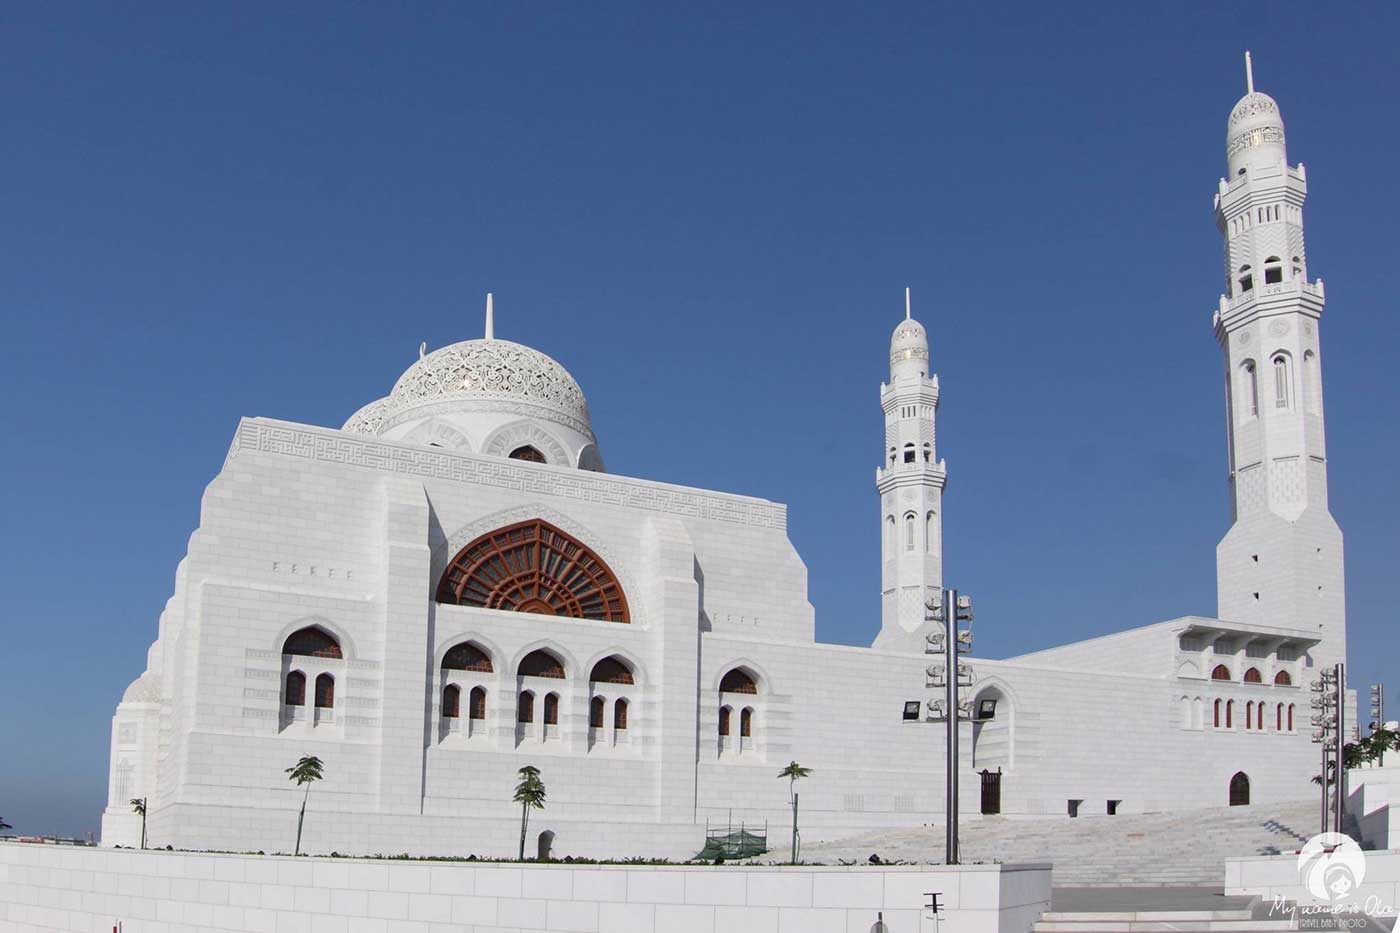 سلطنة عمان تعيد فتح المساجد ابتداءً من اليوم